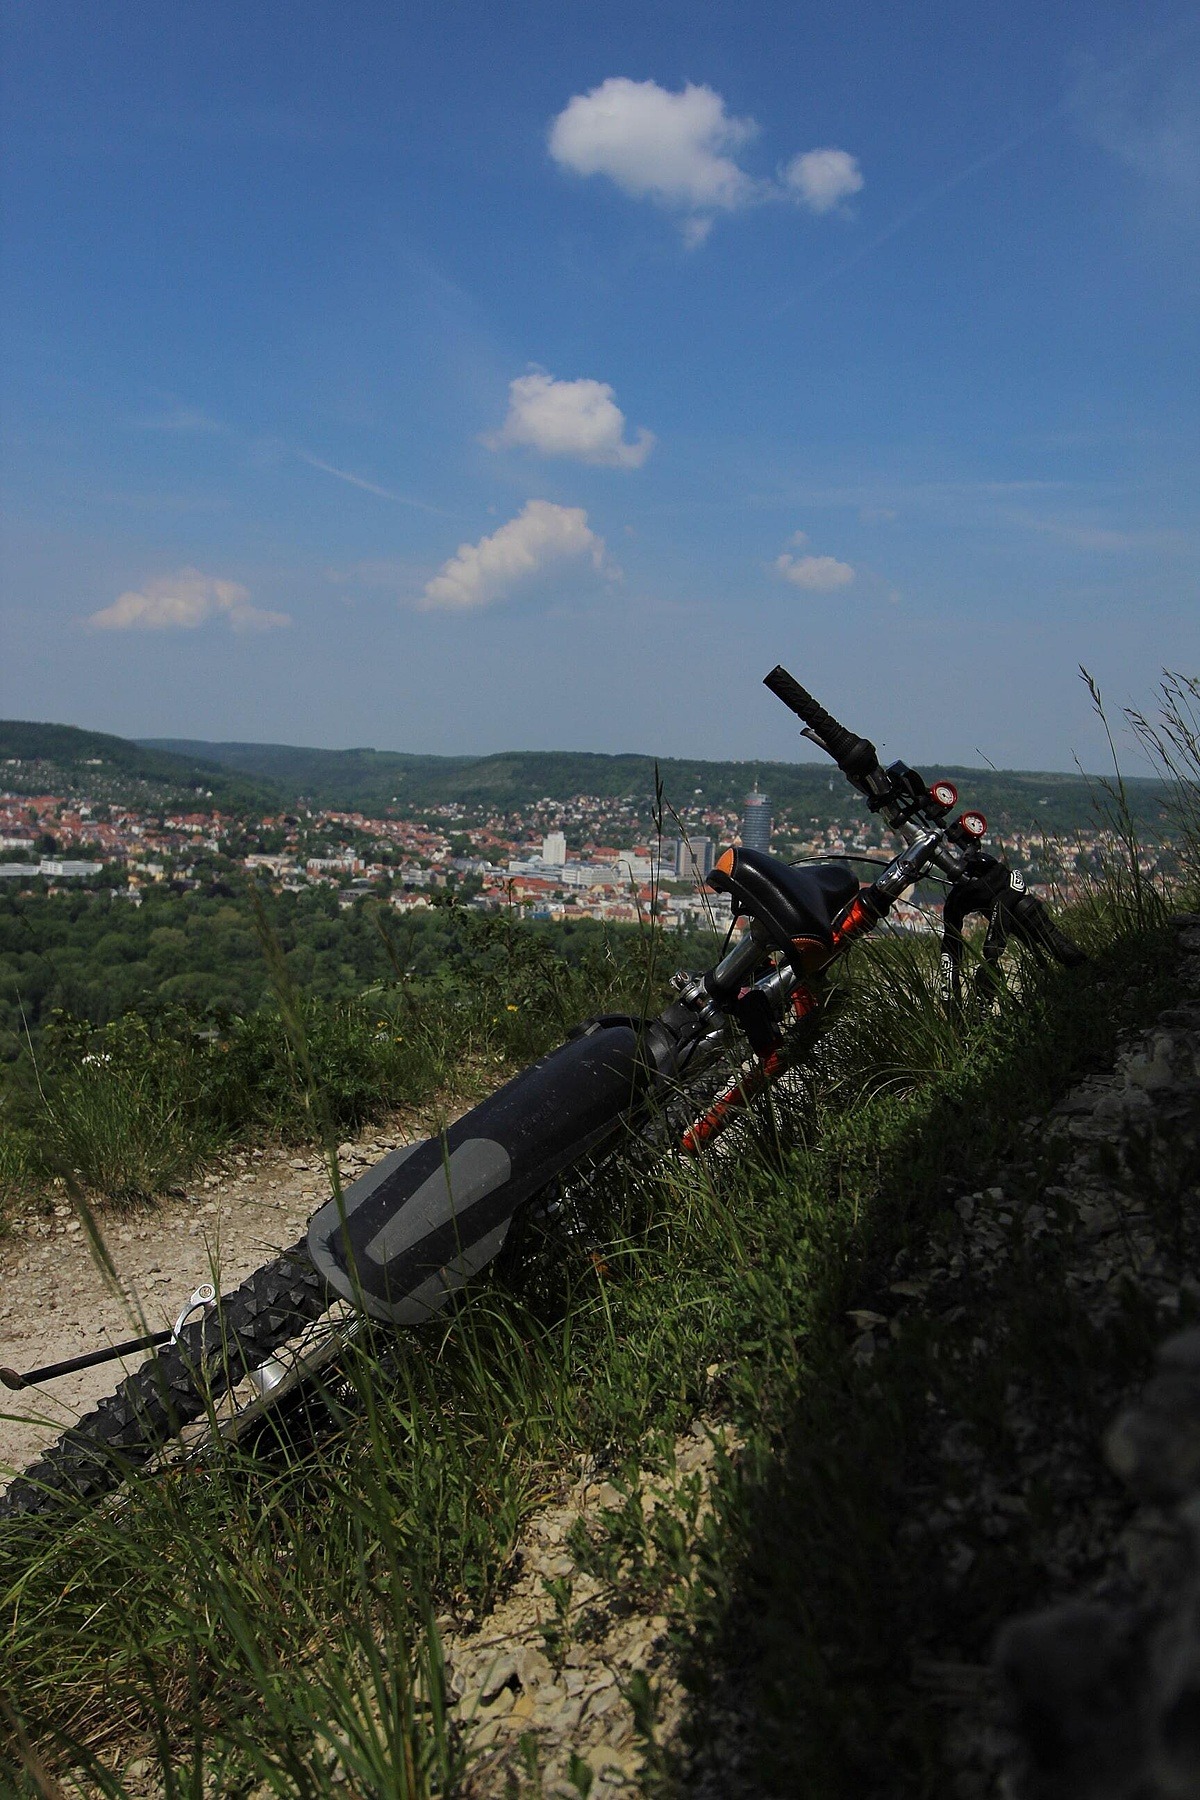 Fahrrad liegt gelehnt neben einem Hügel. Im Hintergrund ist eine Stadt zu erkennen.